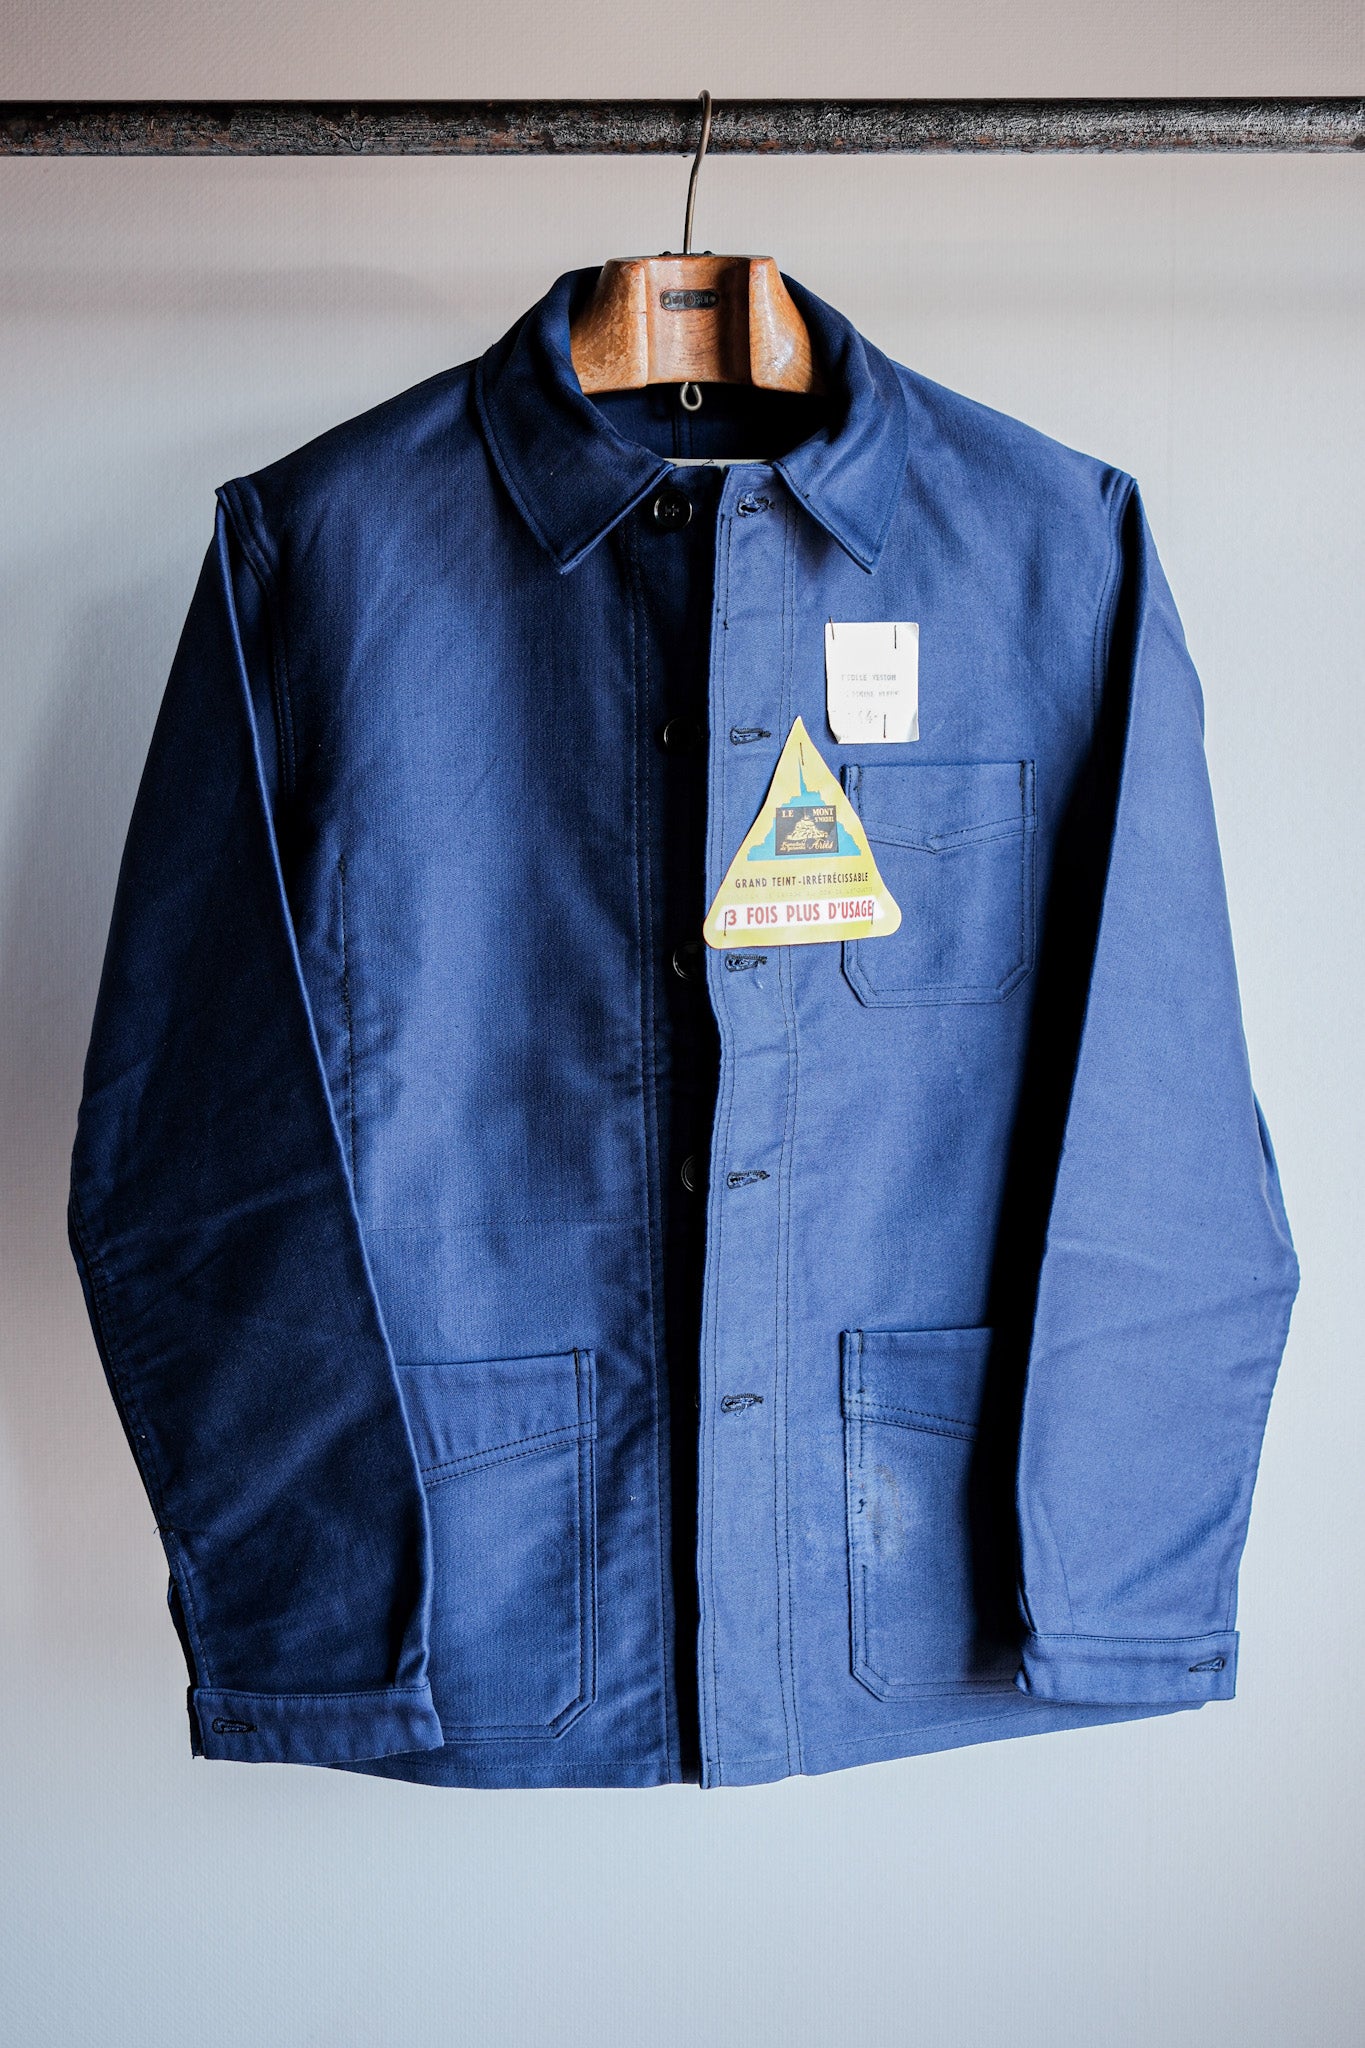 [〜50年代]法國復古藍色摩爾斯金夾克夾克尺寸。44“勒蒙特·米歇爾”“死庫存”